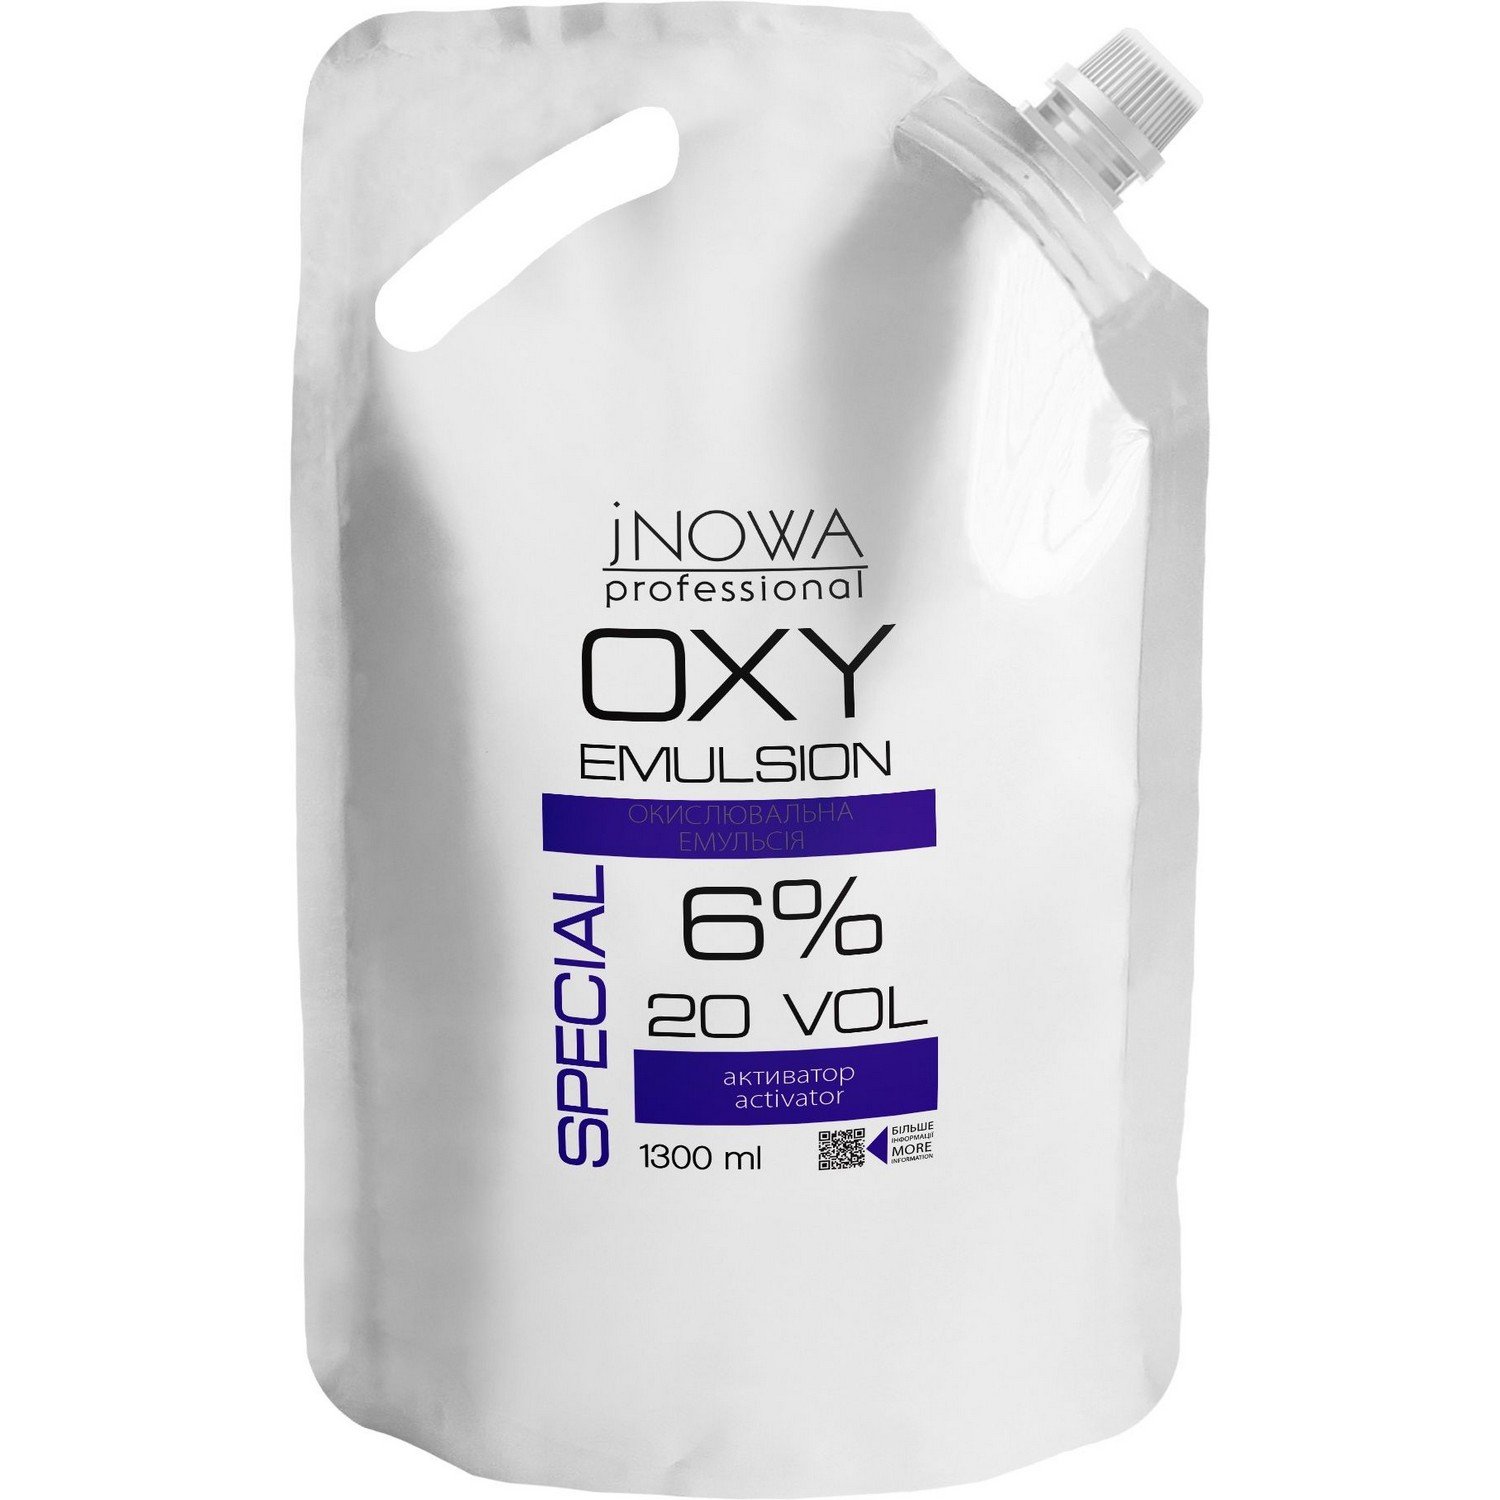 Окислительная эмульсия jNOWA Professional Special OXY 6%, 20 vol, 1300 мл - фото 1